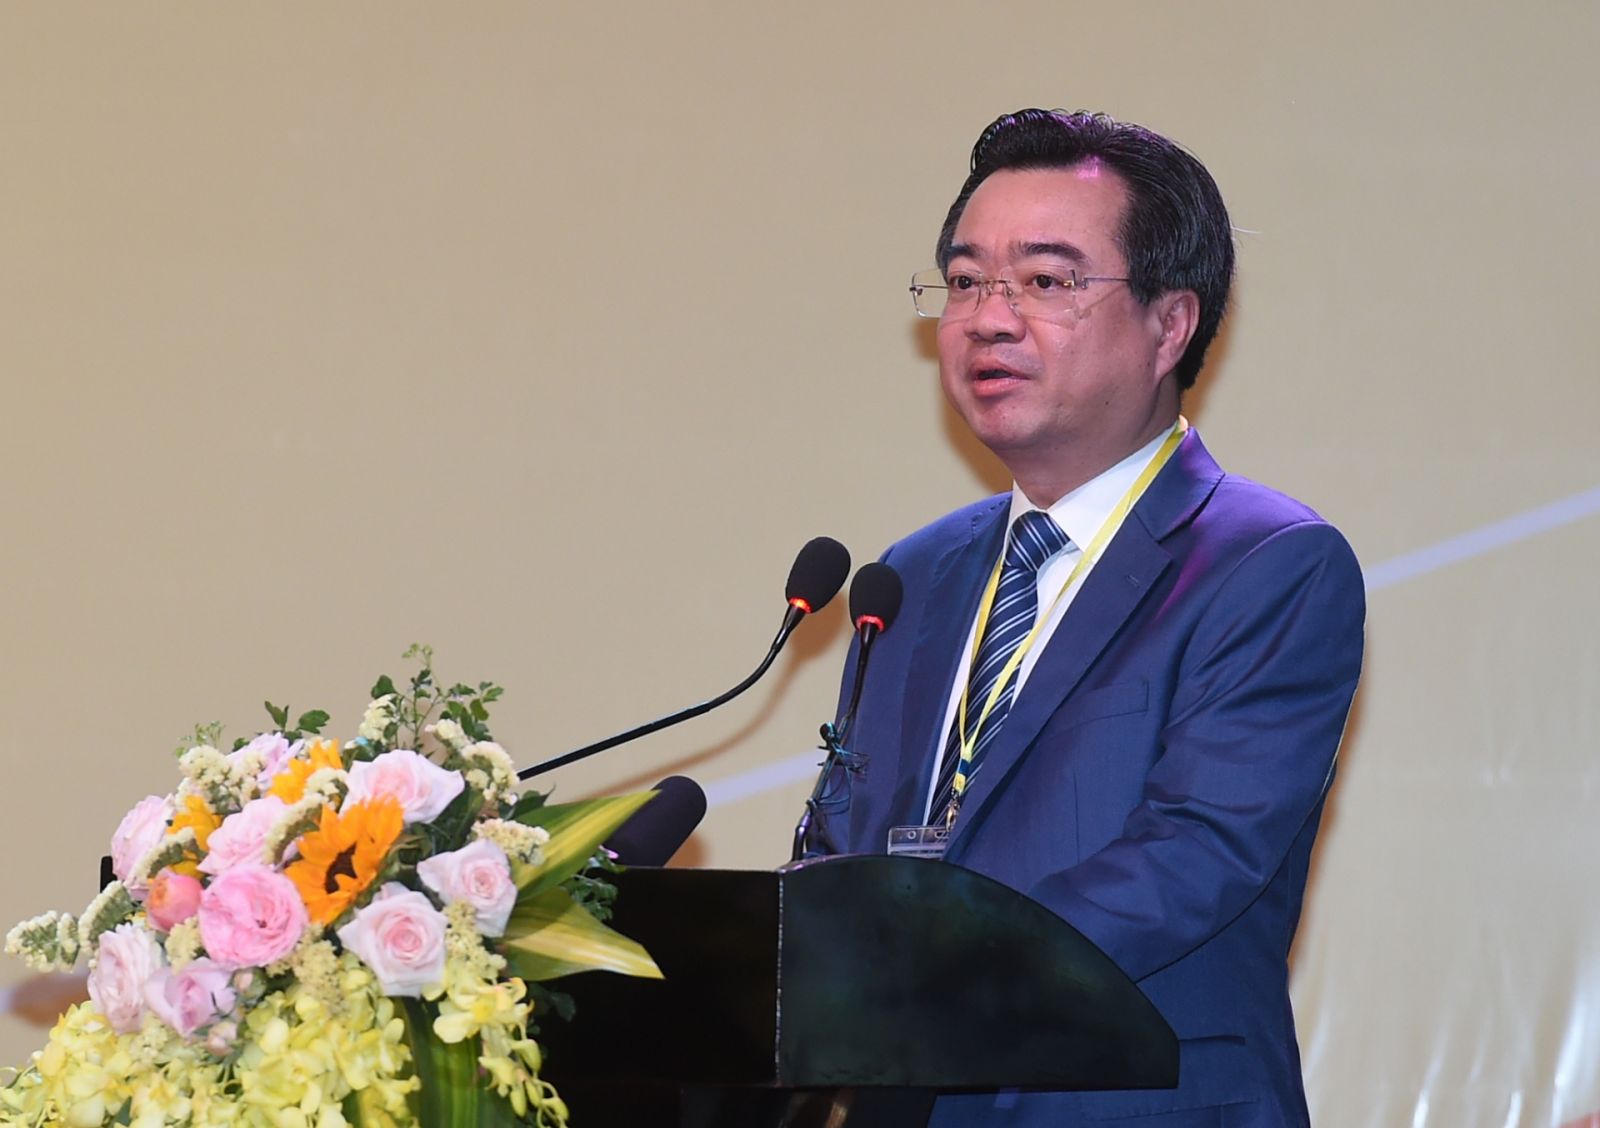 Thứ trưởng Bộ Xây dựng Nguyễn Thanh Nghị phát biểu tại Hội nghị lần thứ 3 về phát triển bền vững Đồng bằng sông Cửu Long thích ứng với biến đổi khí hậu